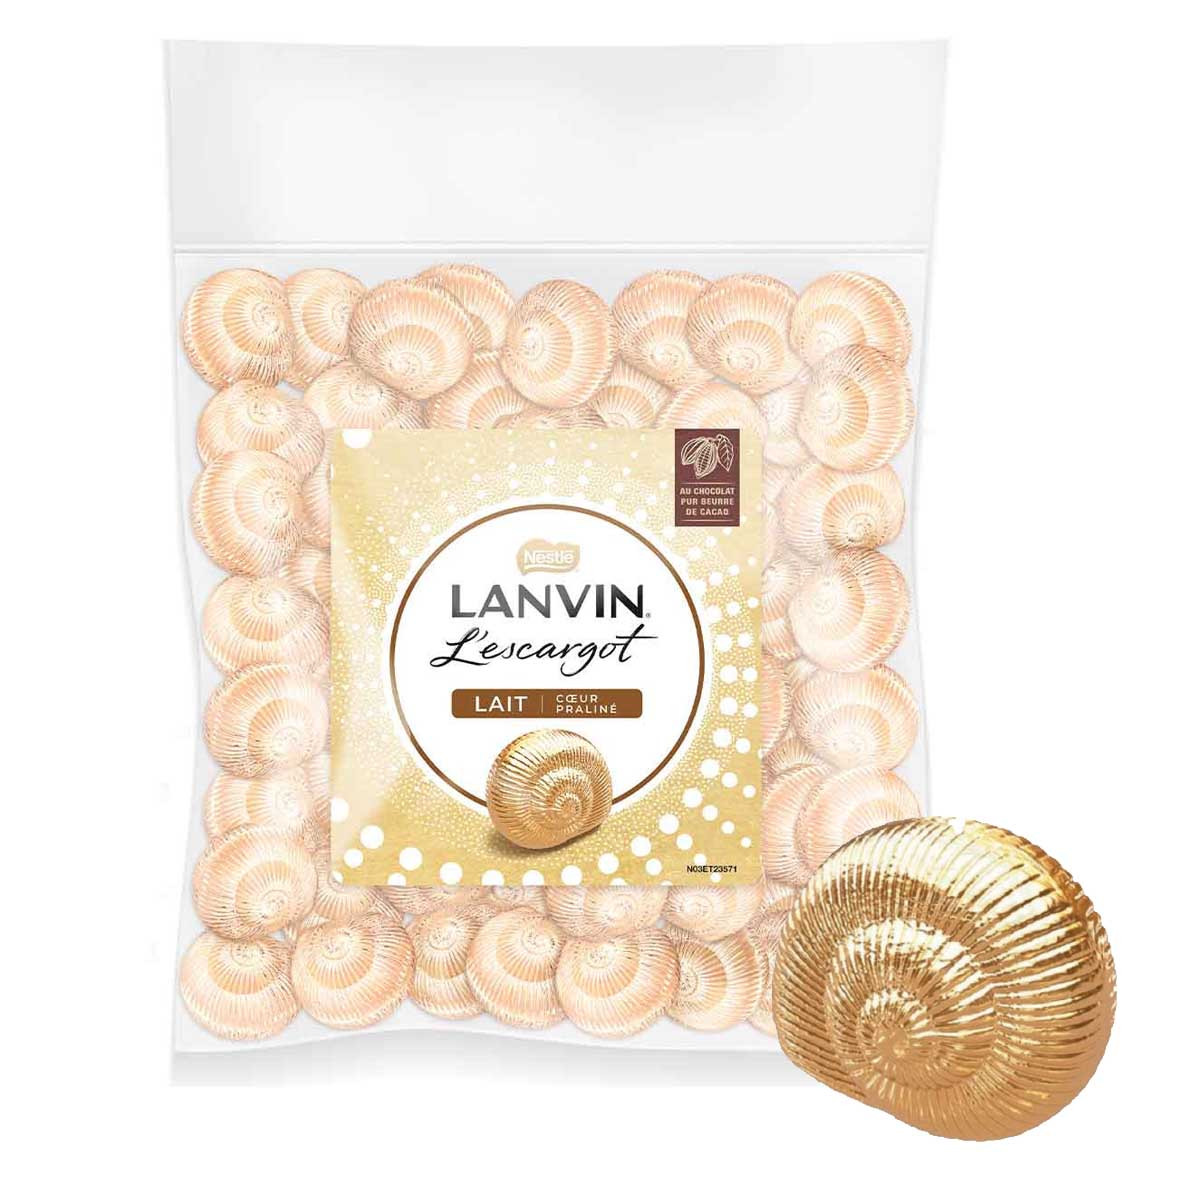 LANVIN Lanvin mini escargot chocolat au lait 138g pas cher 